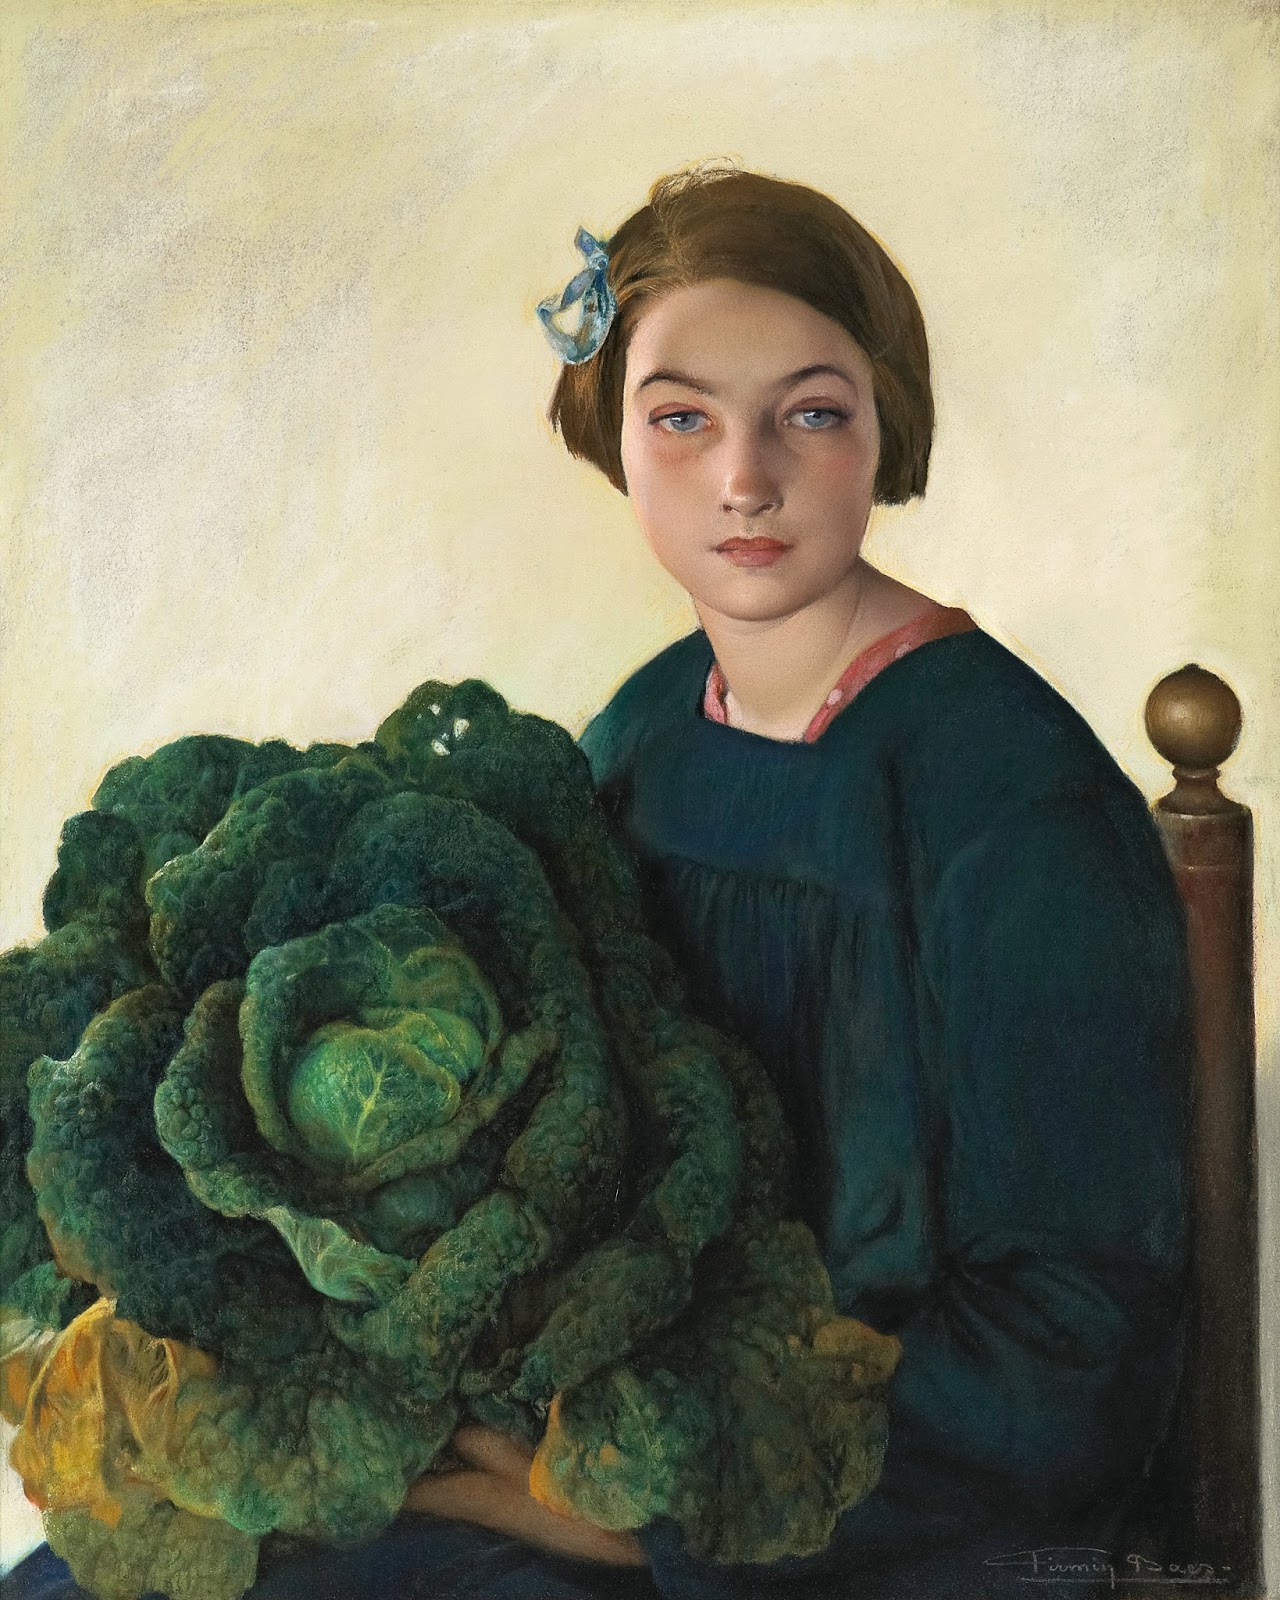 La Jeune fille et le chou by Firmin Baes - v. 1903 - 85 x 70,5 cm collection privée